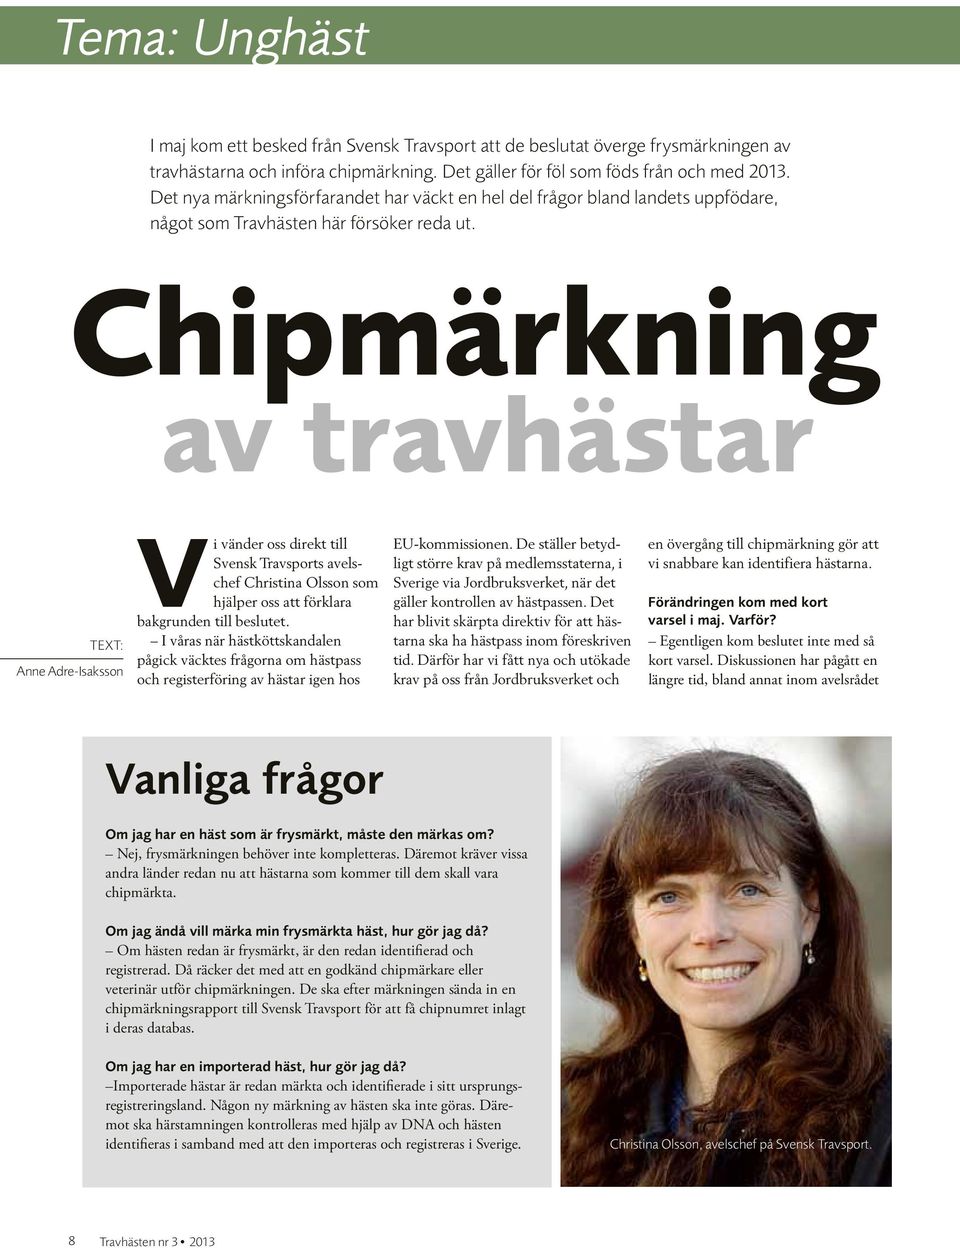 Chipmärkning av travhästar Text: Anne Adre-Isaksson Vi vänder oss direkt till Svensk Travsports avelschef Christina Olsson som hjälper oss att förklara bakgrunden till beslutet.